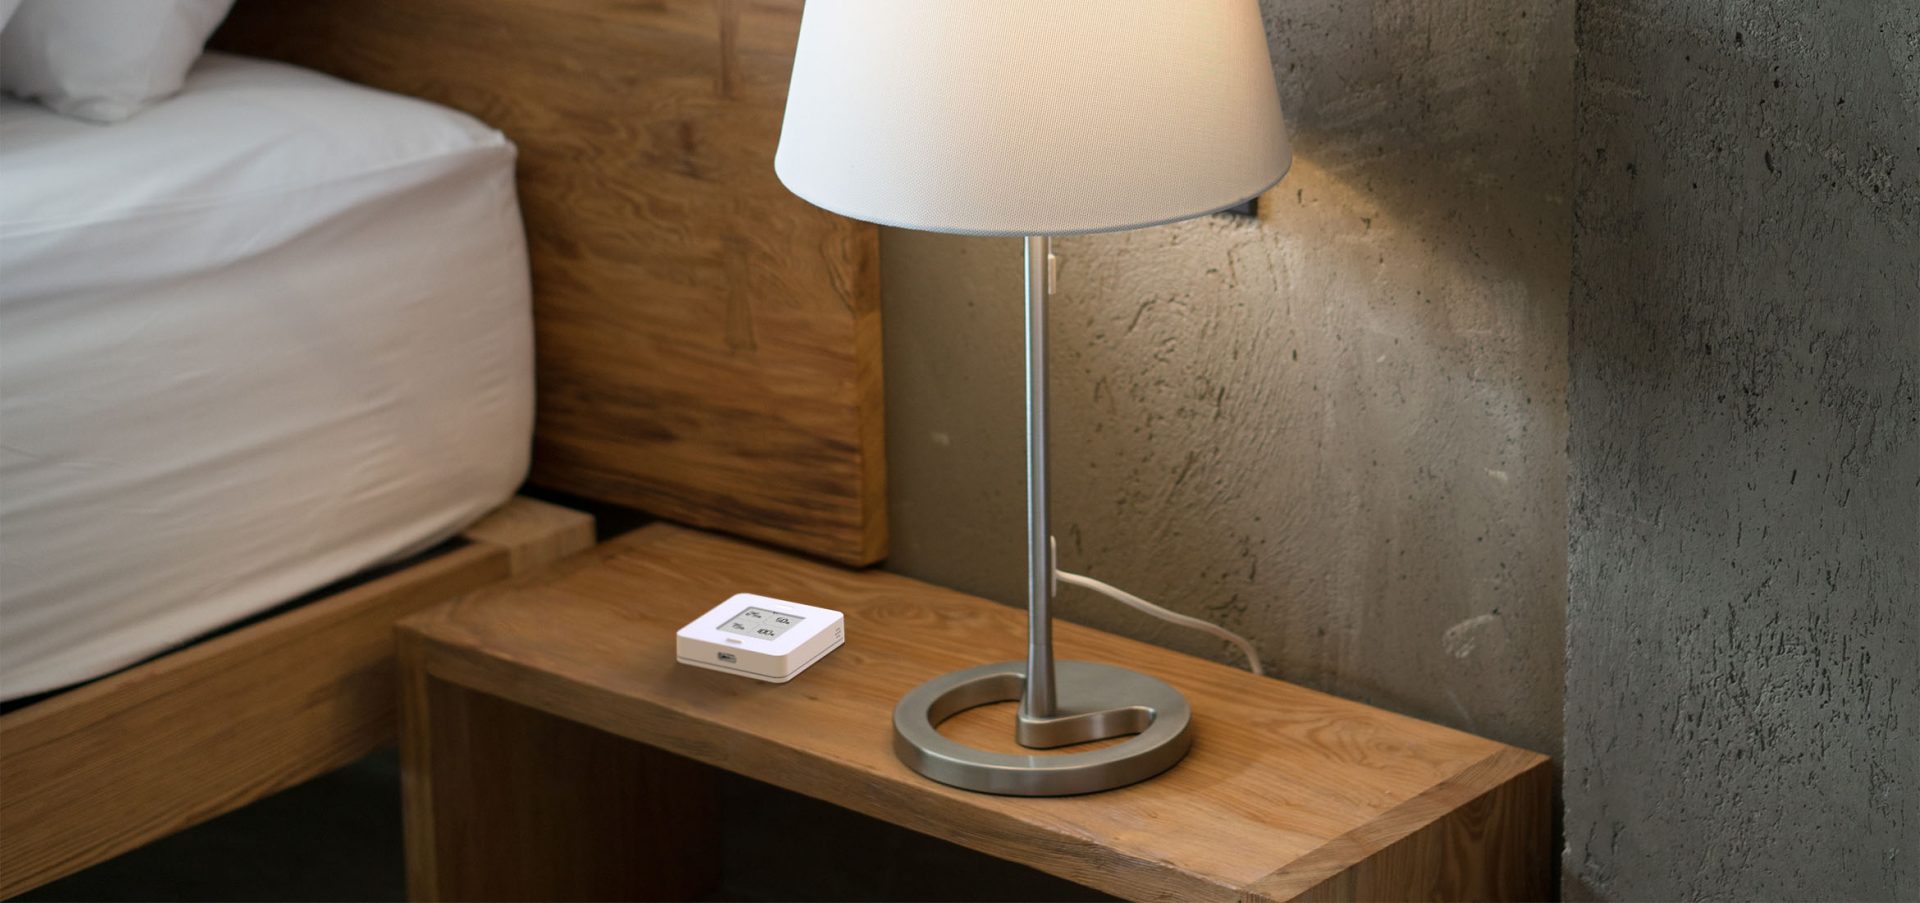 myStrom Button Max WLAN Smart Home Taster mit E-Paper Display und 4 Tasten